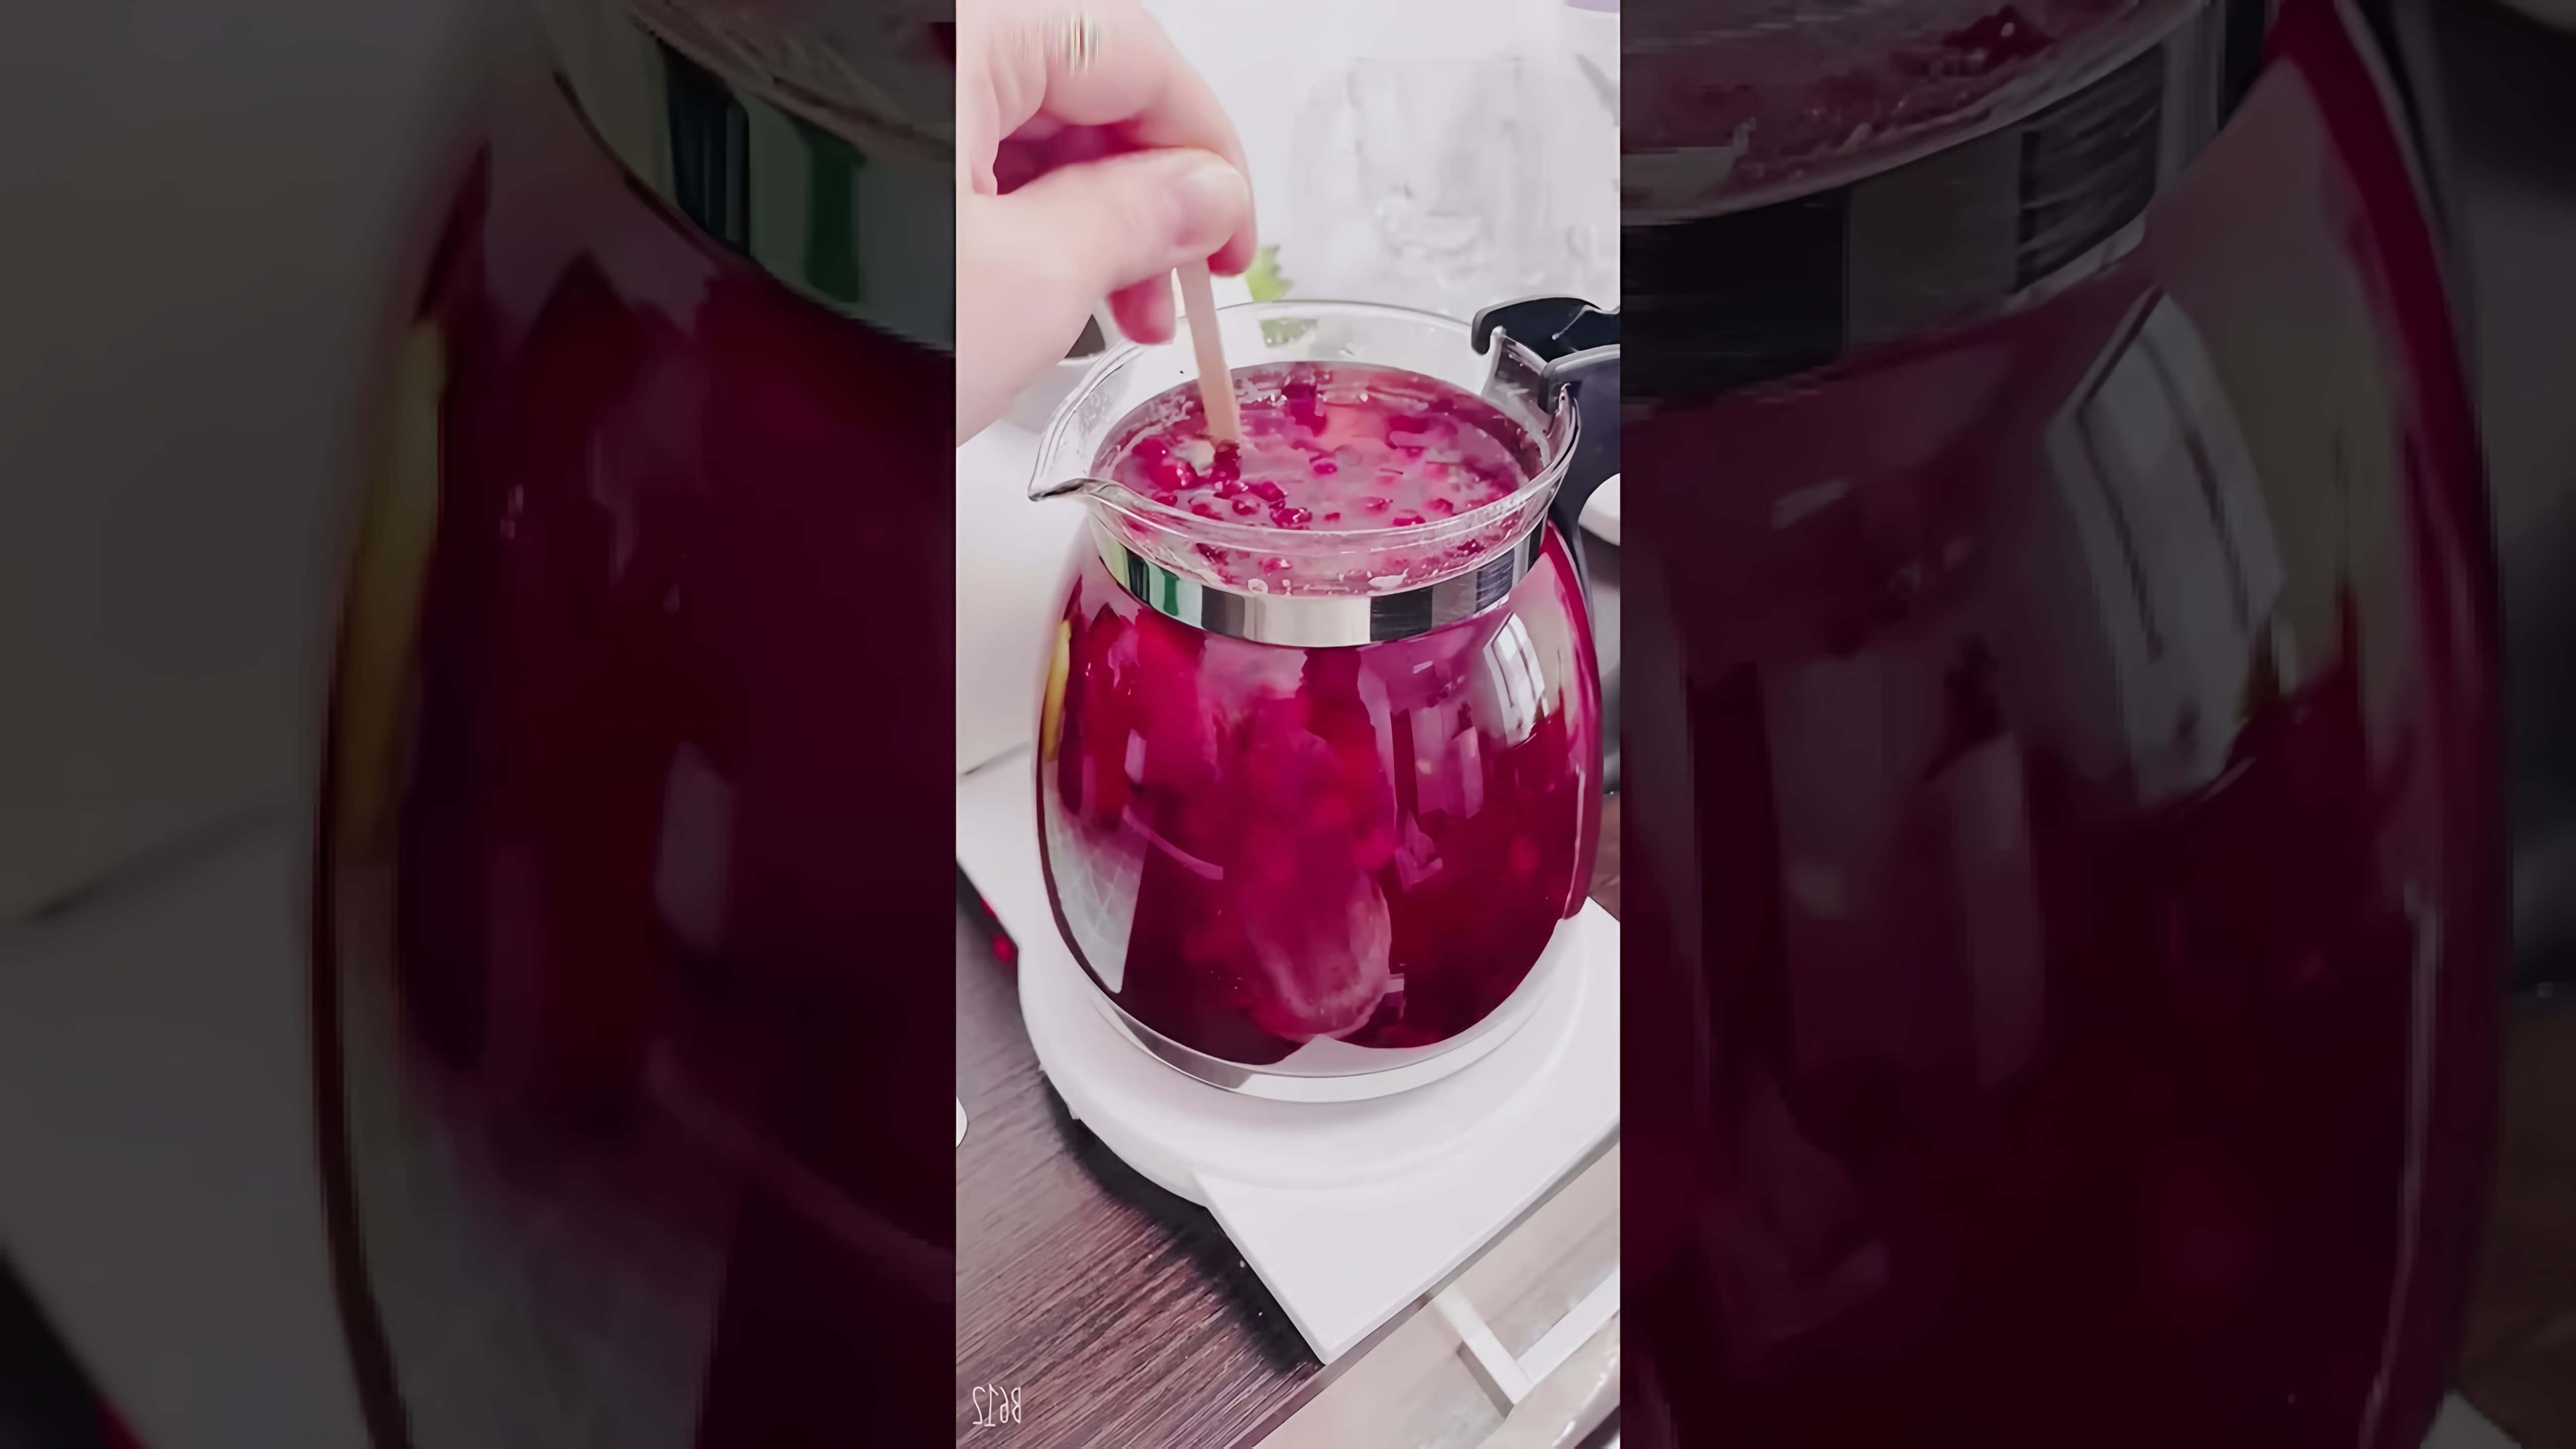 "Чай Клубника-Брусника-Базилик" - это видео-ролик, который представляет собой рецепт приготовления вкусного и ароматного чая